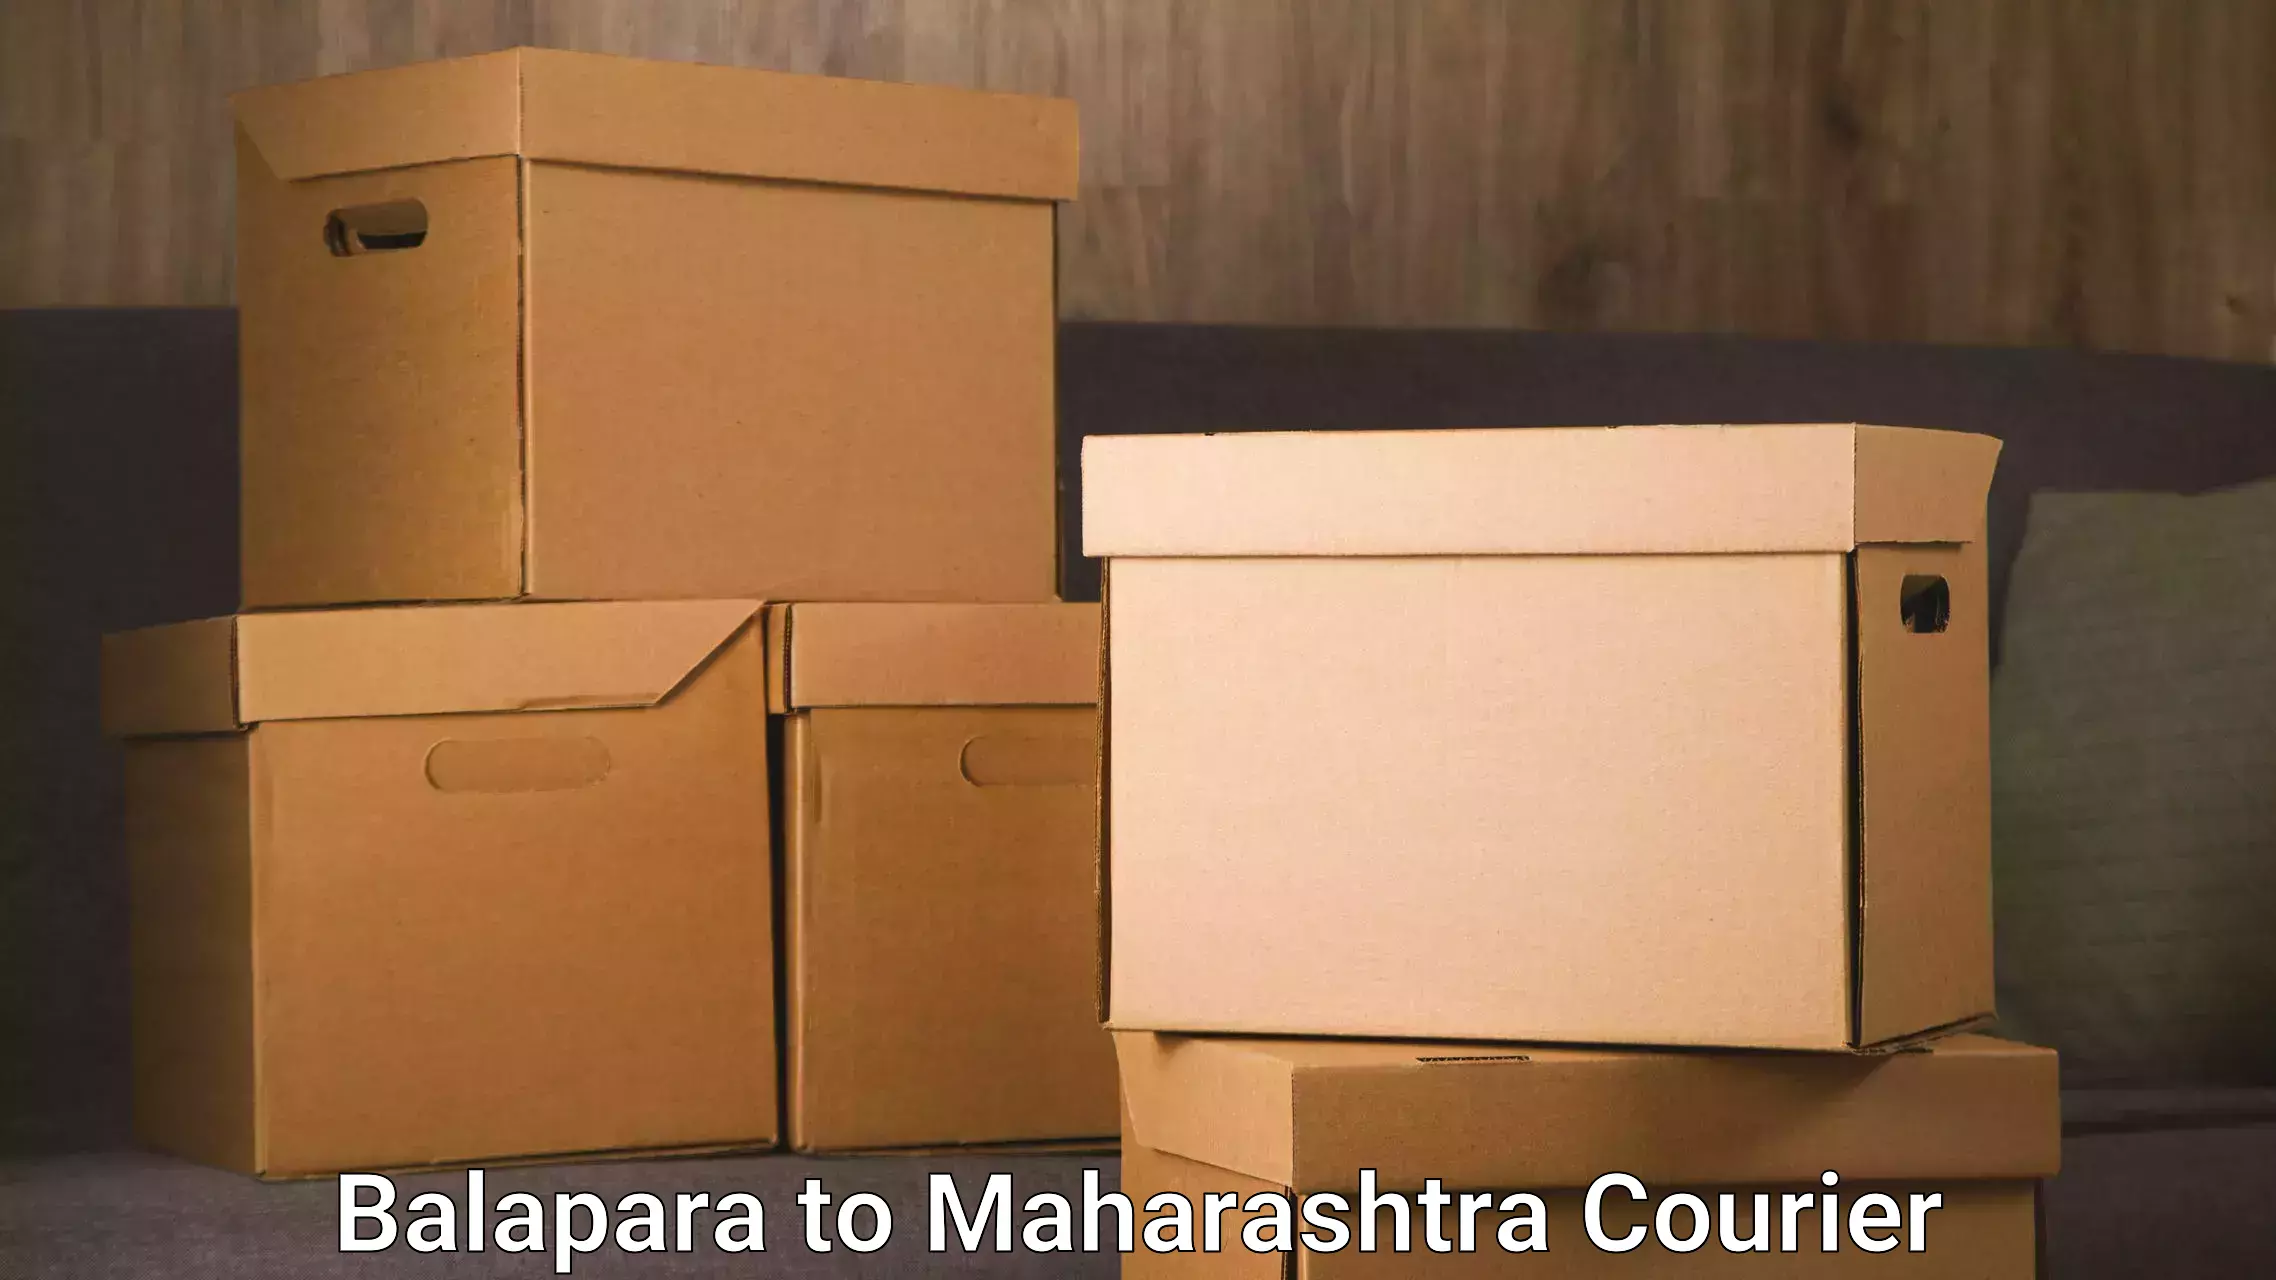 Digital courier platforms Balapara to Pune